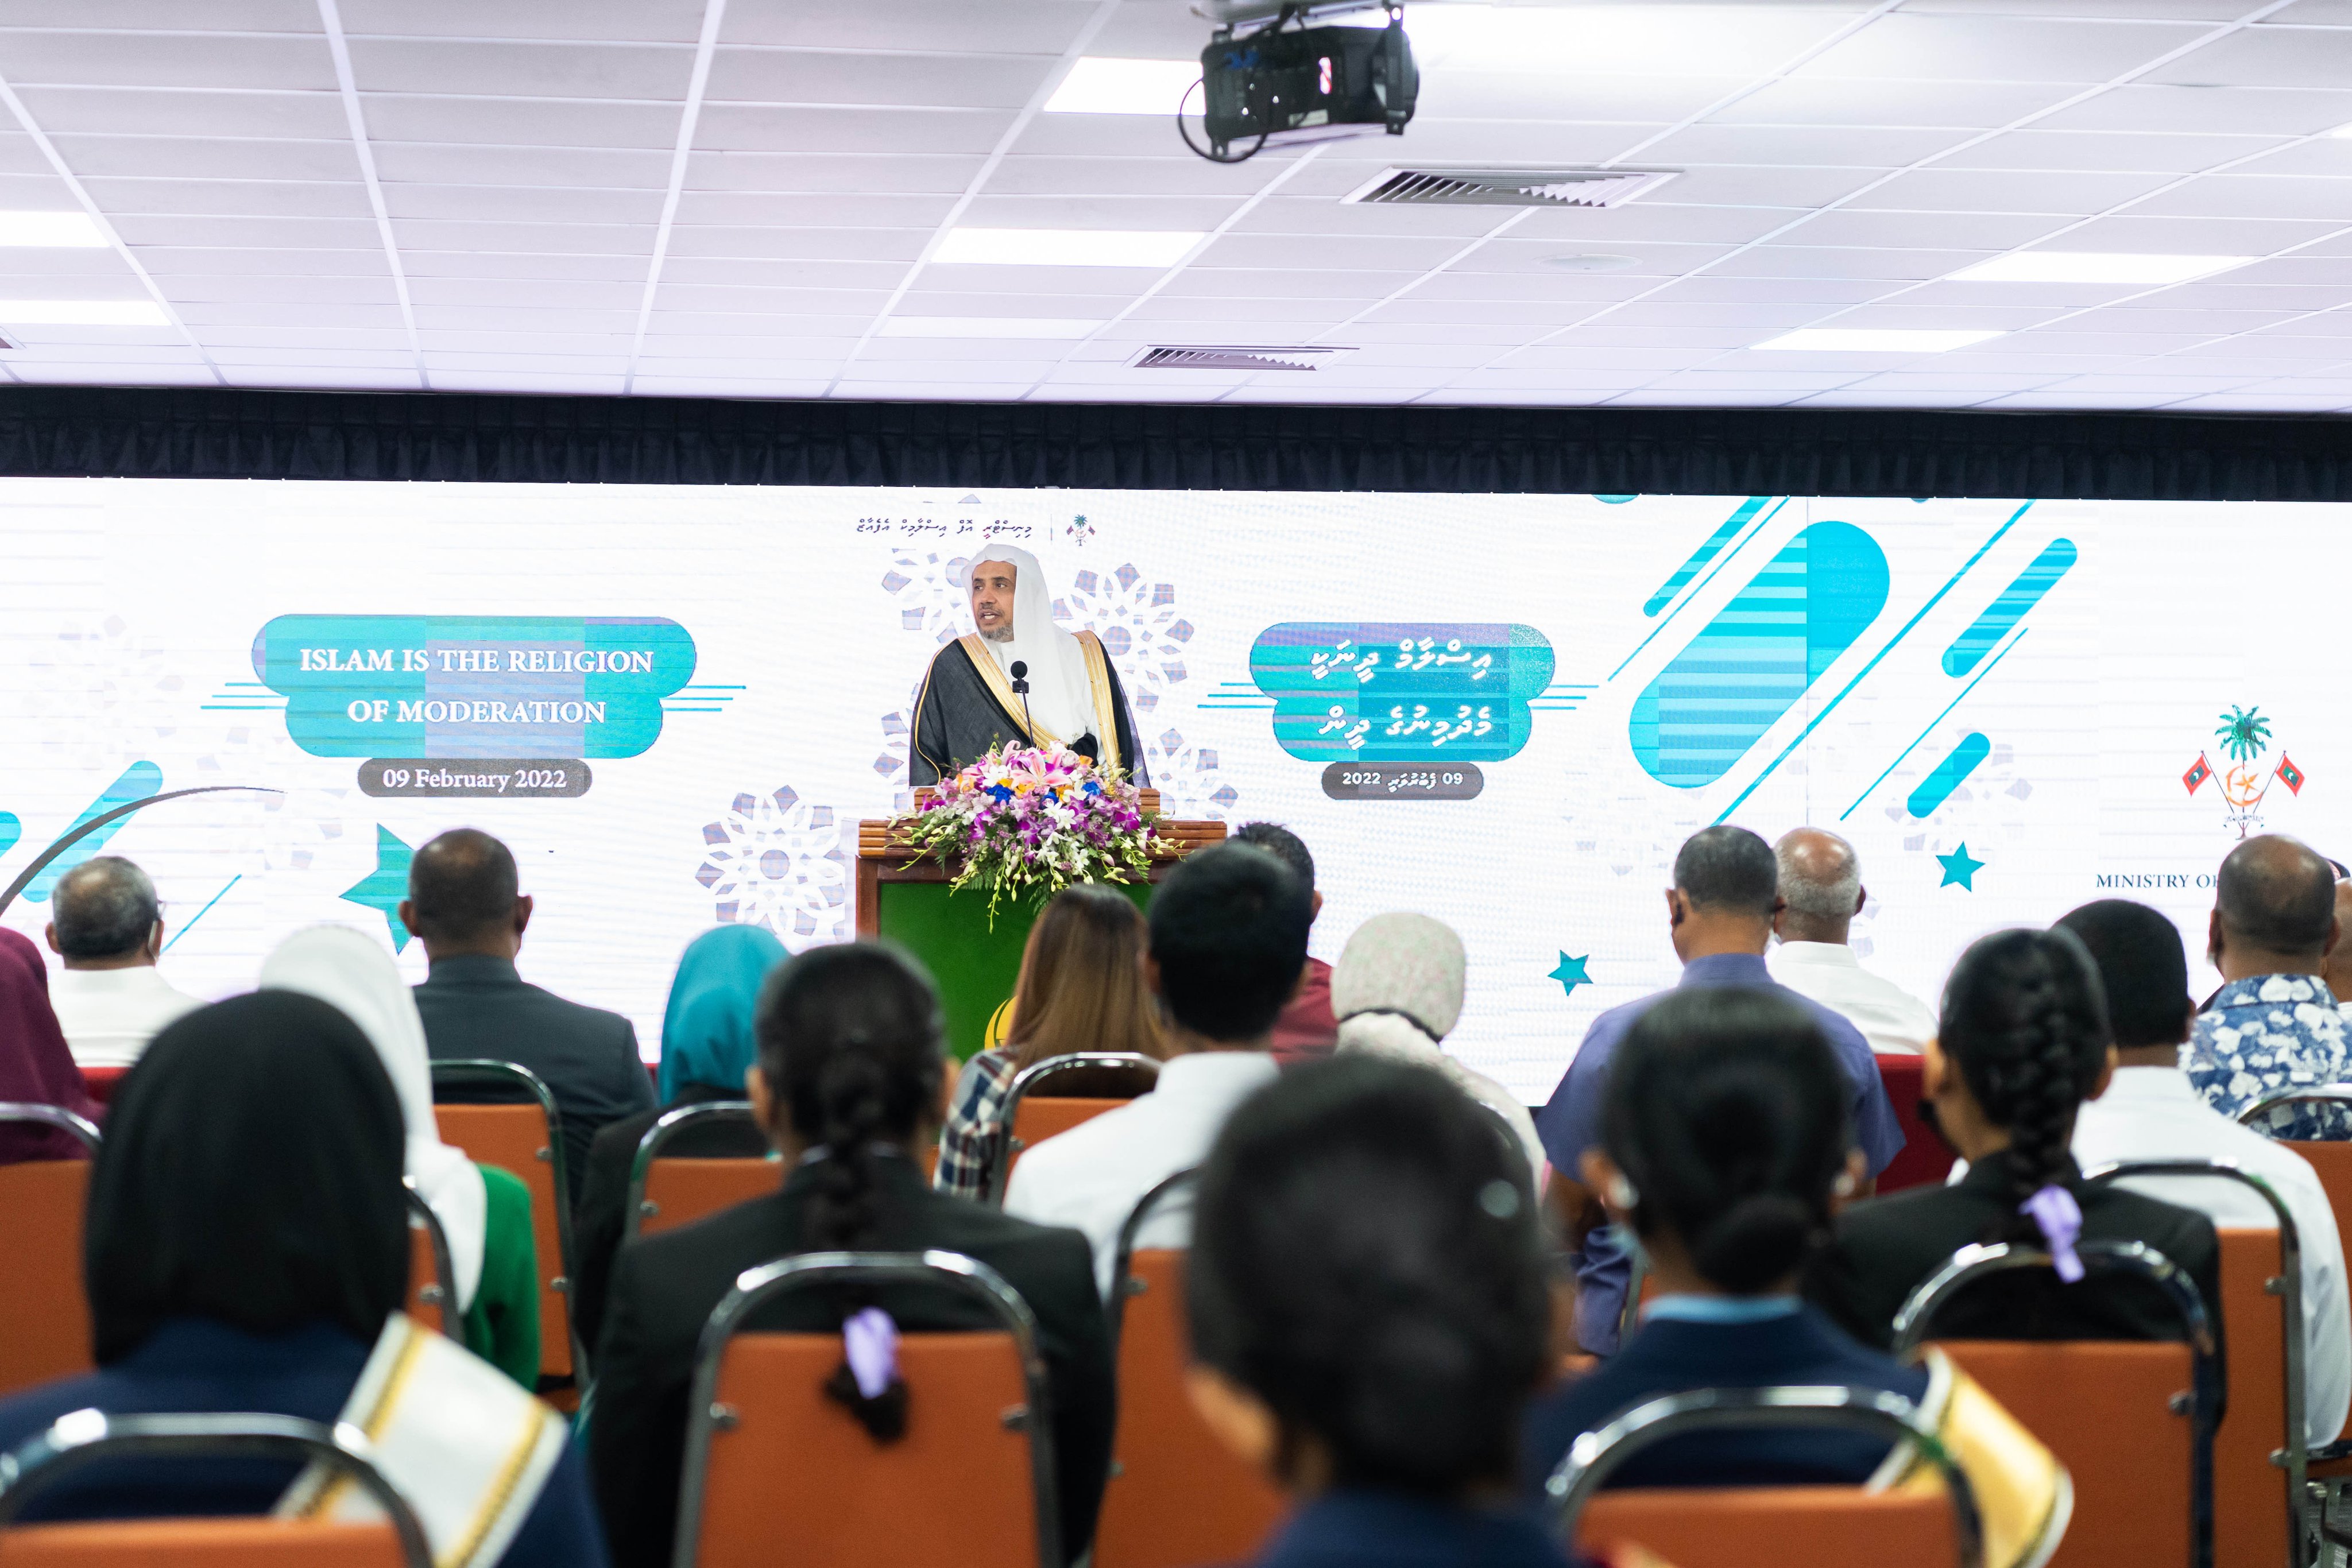 شیخ ڈاکٹر محمد العسی نے وزارت مذہبی امور مالدیپ میں لیکچر دیا، جس میں شرعی فتاوی اور تبلیغ دین کے اہم اصول پر روشنی ڈالی